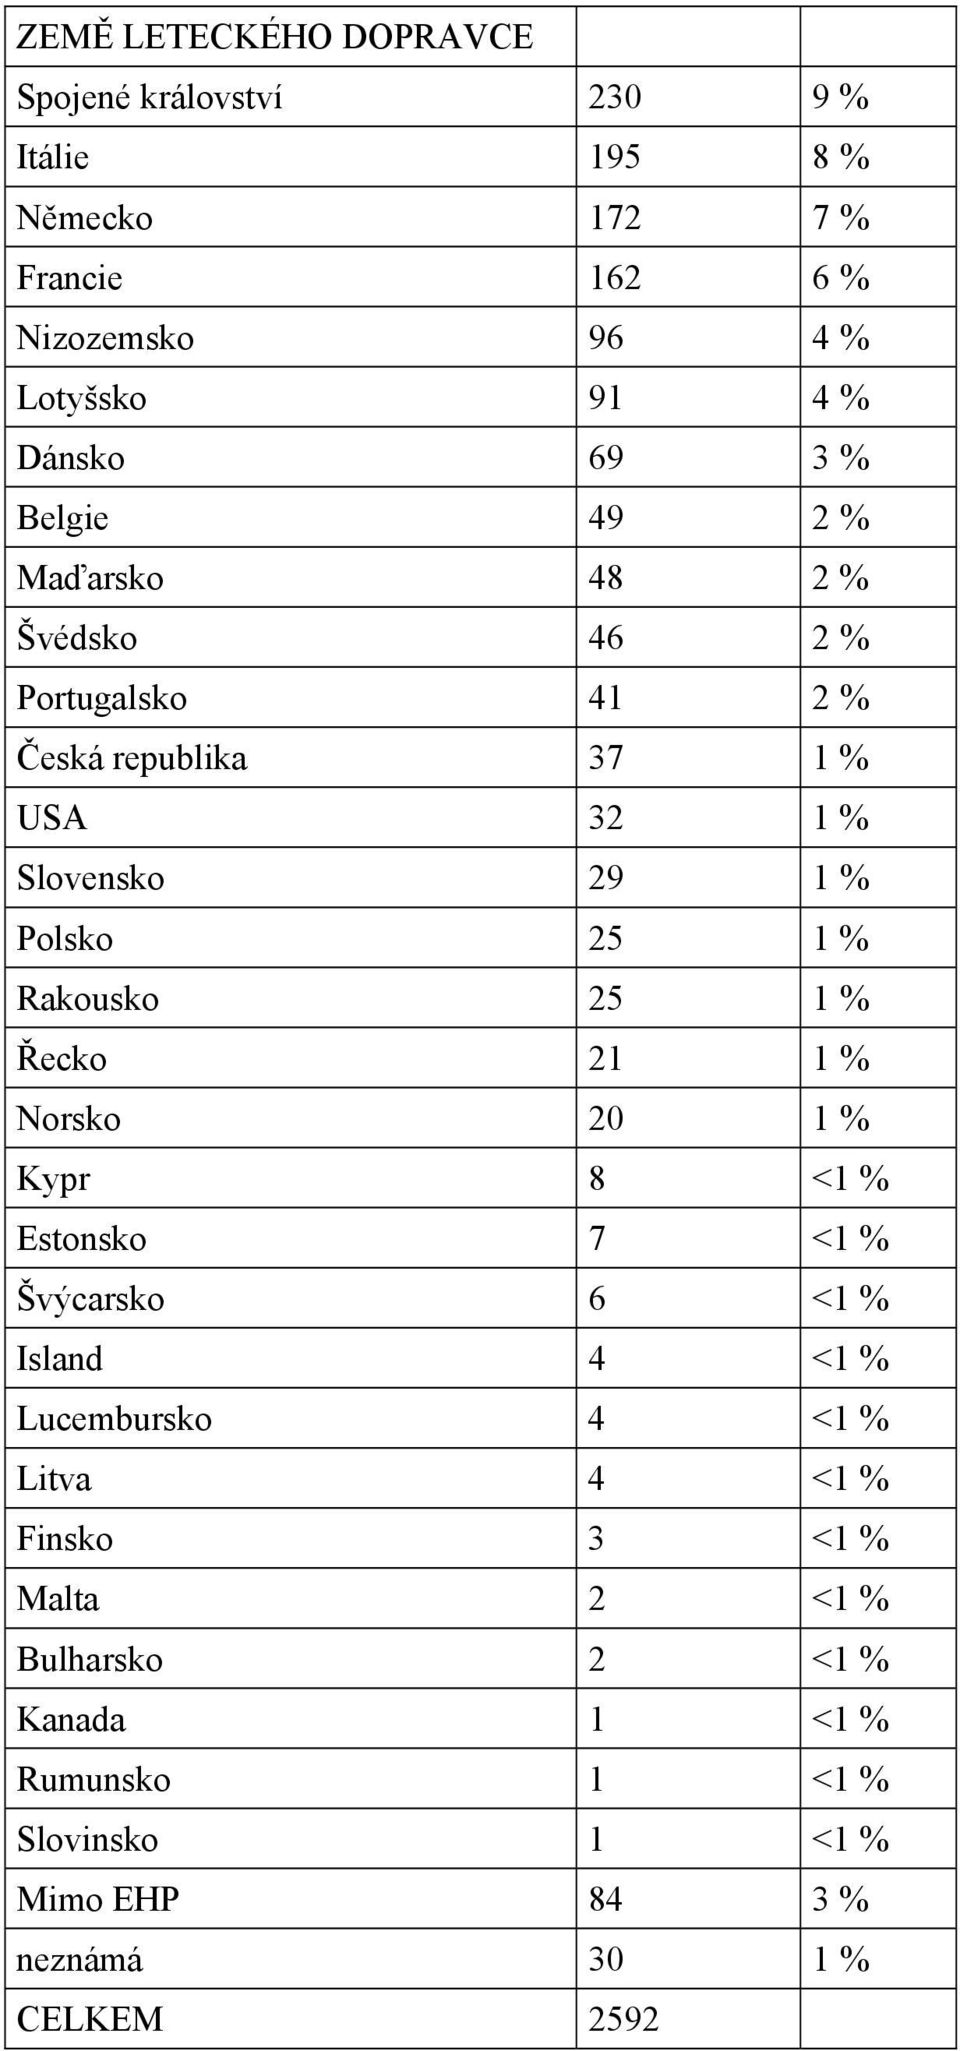 25 1 % Rakousko 25 1 % Řecko 21 1 % Norsko 20 1 % Kypr 8 <1 % Estonsko 7 <1 % Švýcarsko 6 <1 % Island 4 <1 % Lucembursko 4 <1 % Litva 4